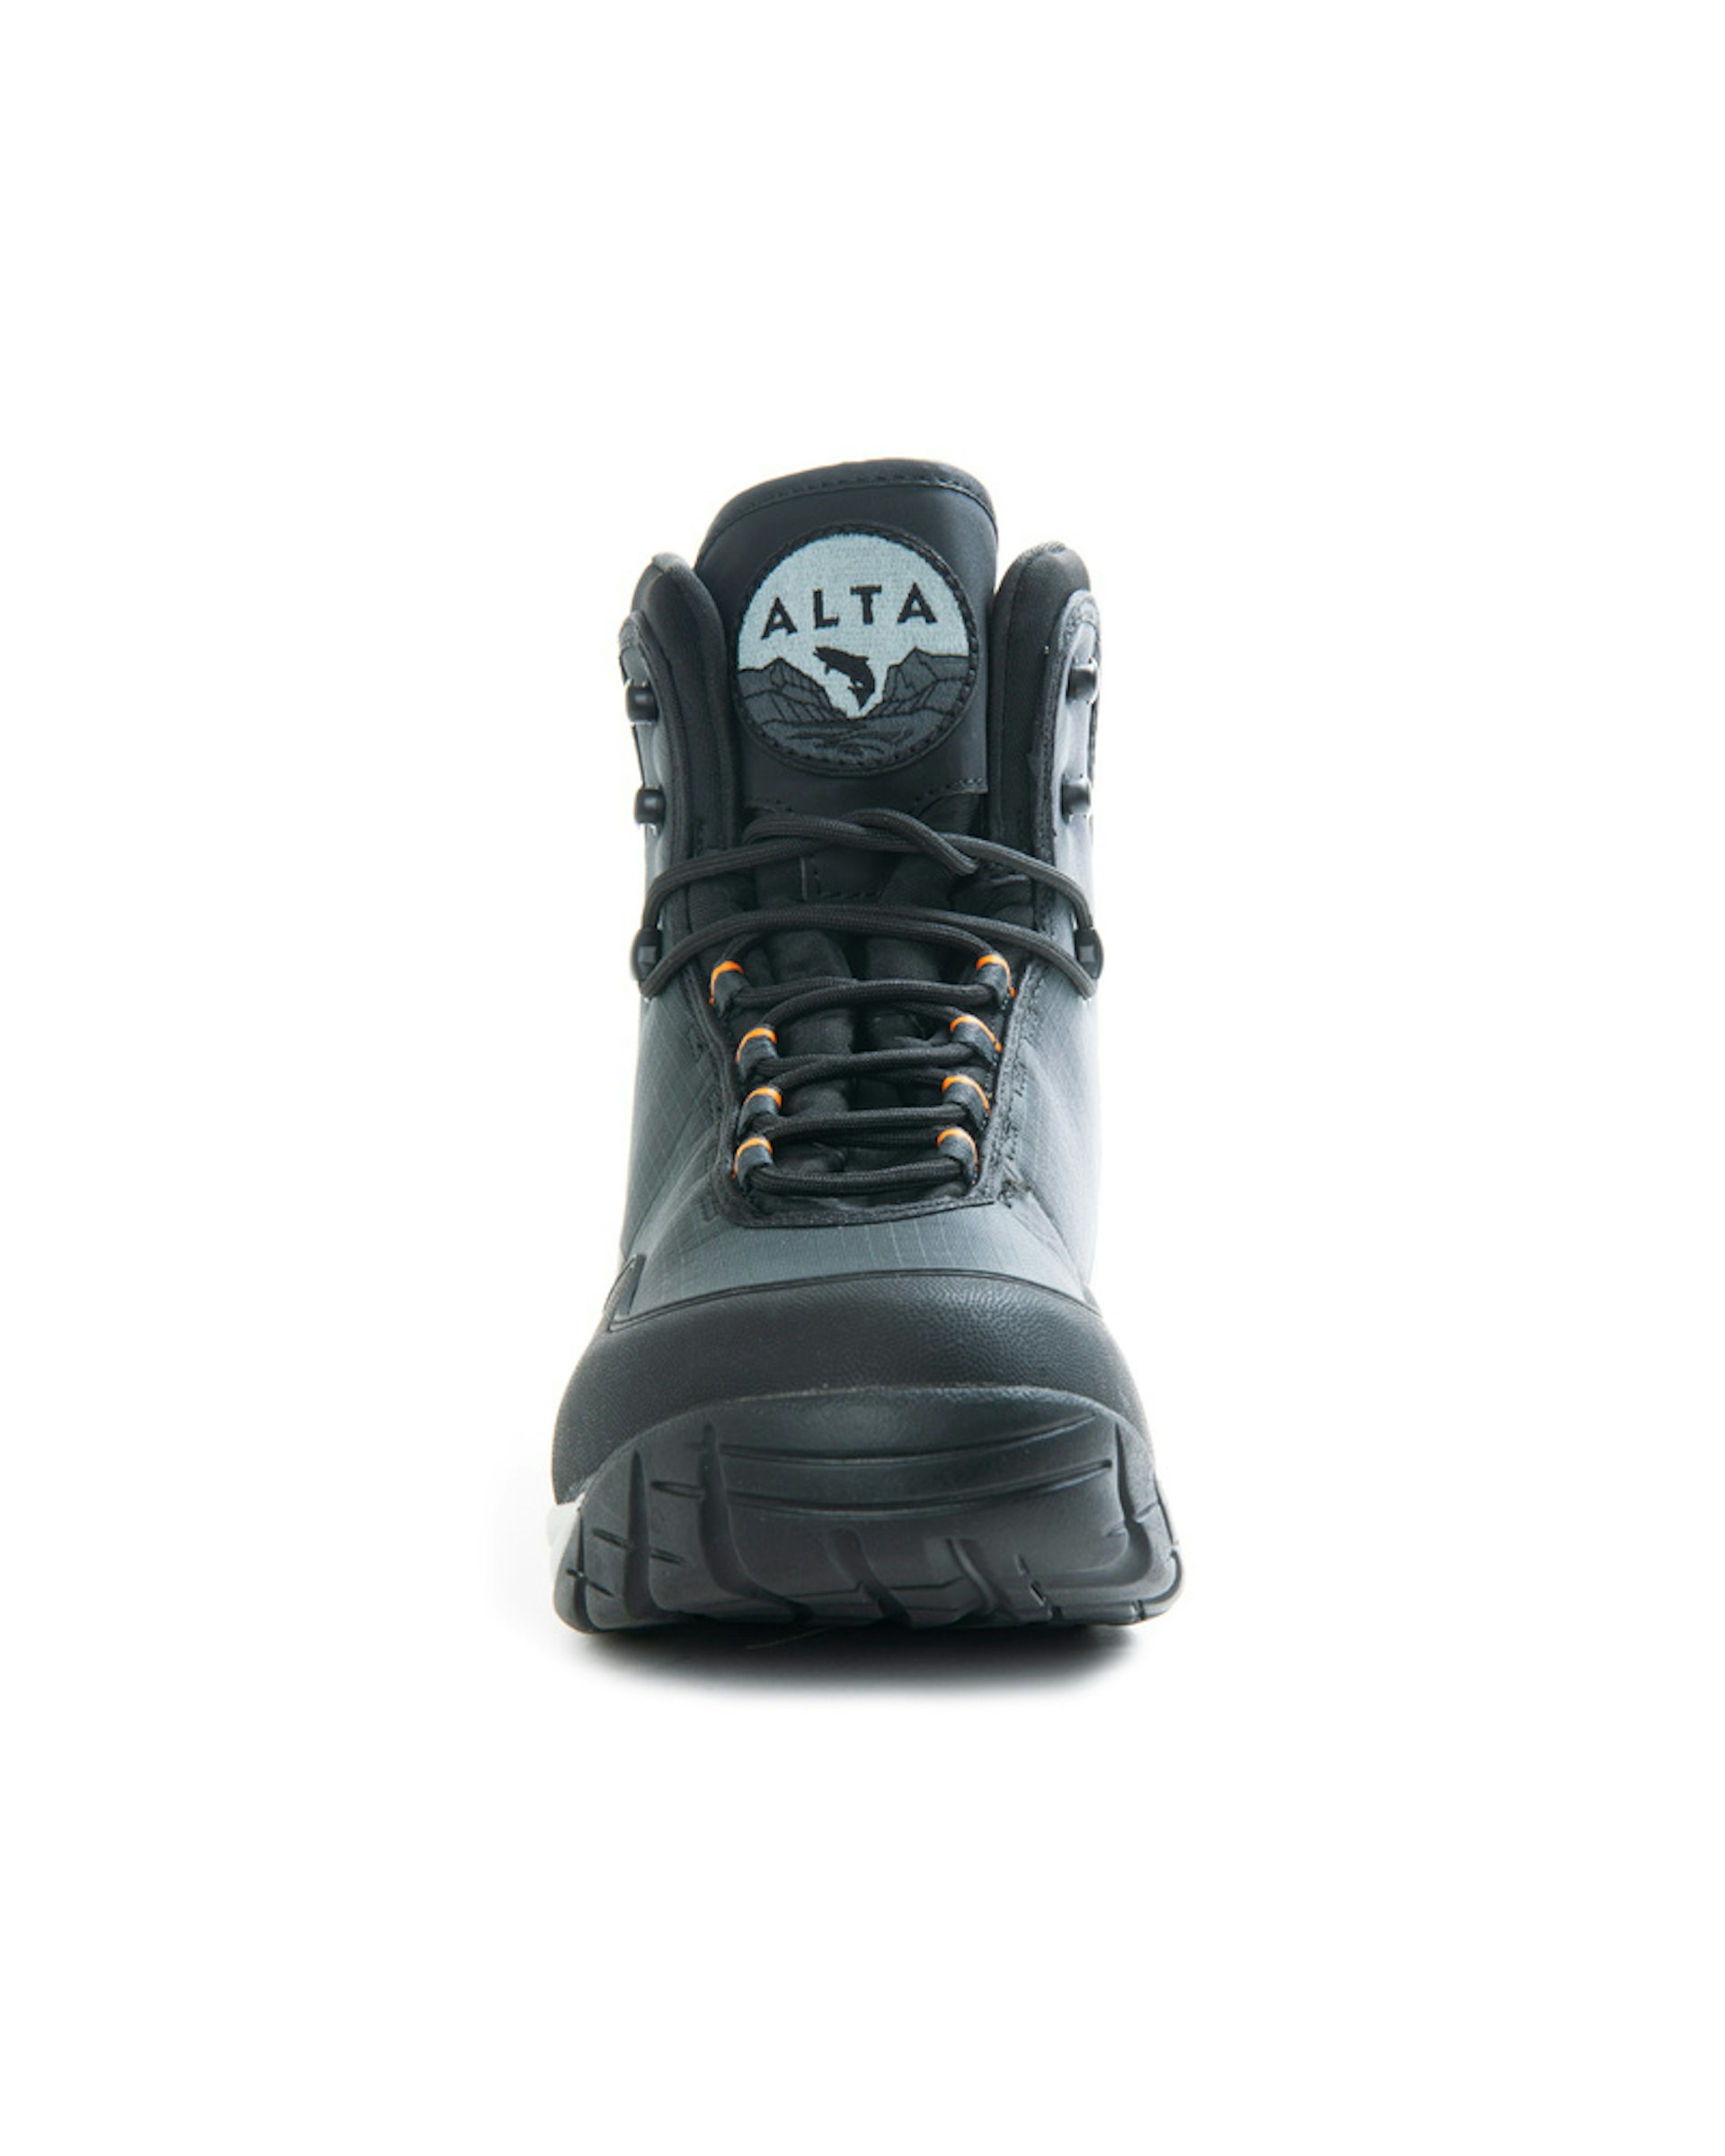 Alta NGx Boot Vibram US9/EUR42/UK8 (bilde 4 av 6)